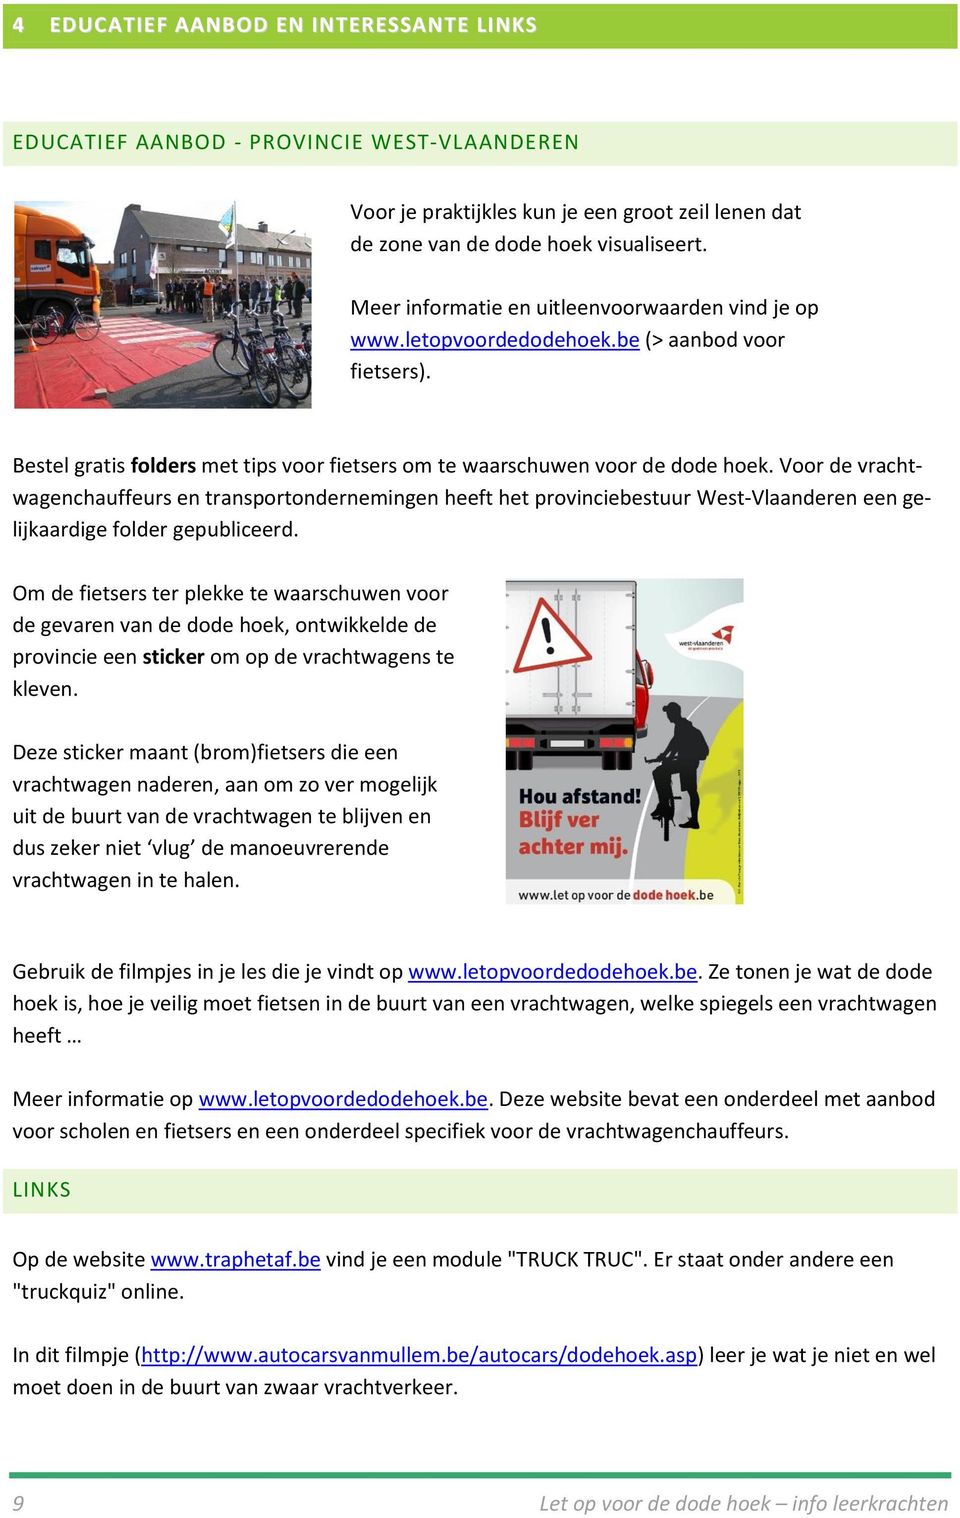 Voor de vrachtwagenchauffeurs en transportondernemingen heeft het provinciebestuur West-Vlaanderen een gelijkaardige folder gepubliceerd.